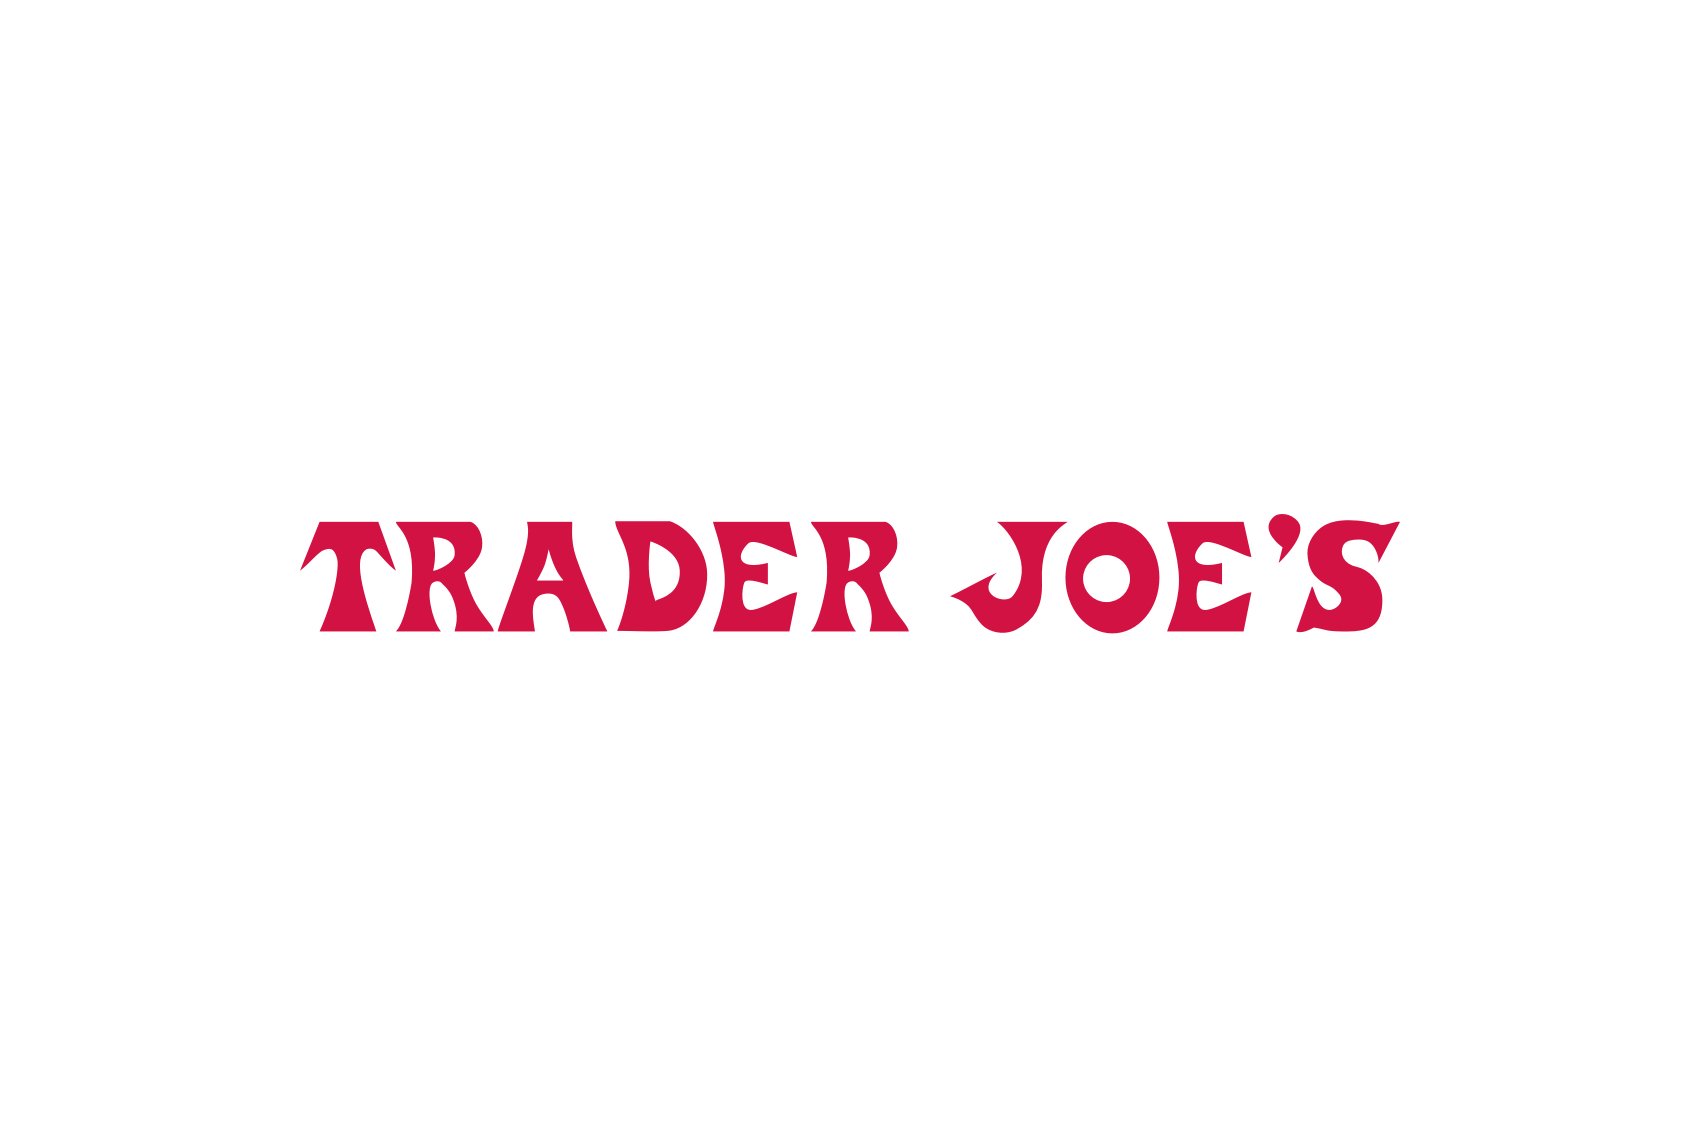 handcrafted-logo-trader-joe